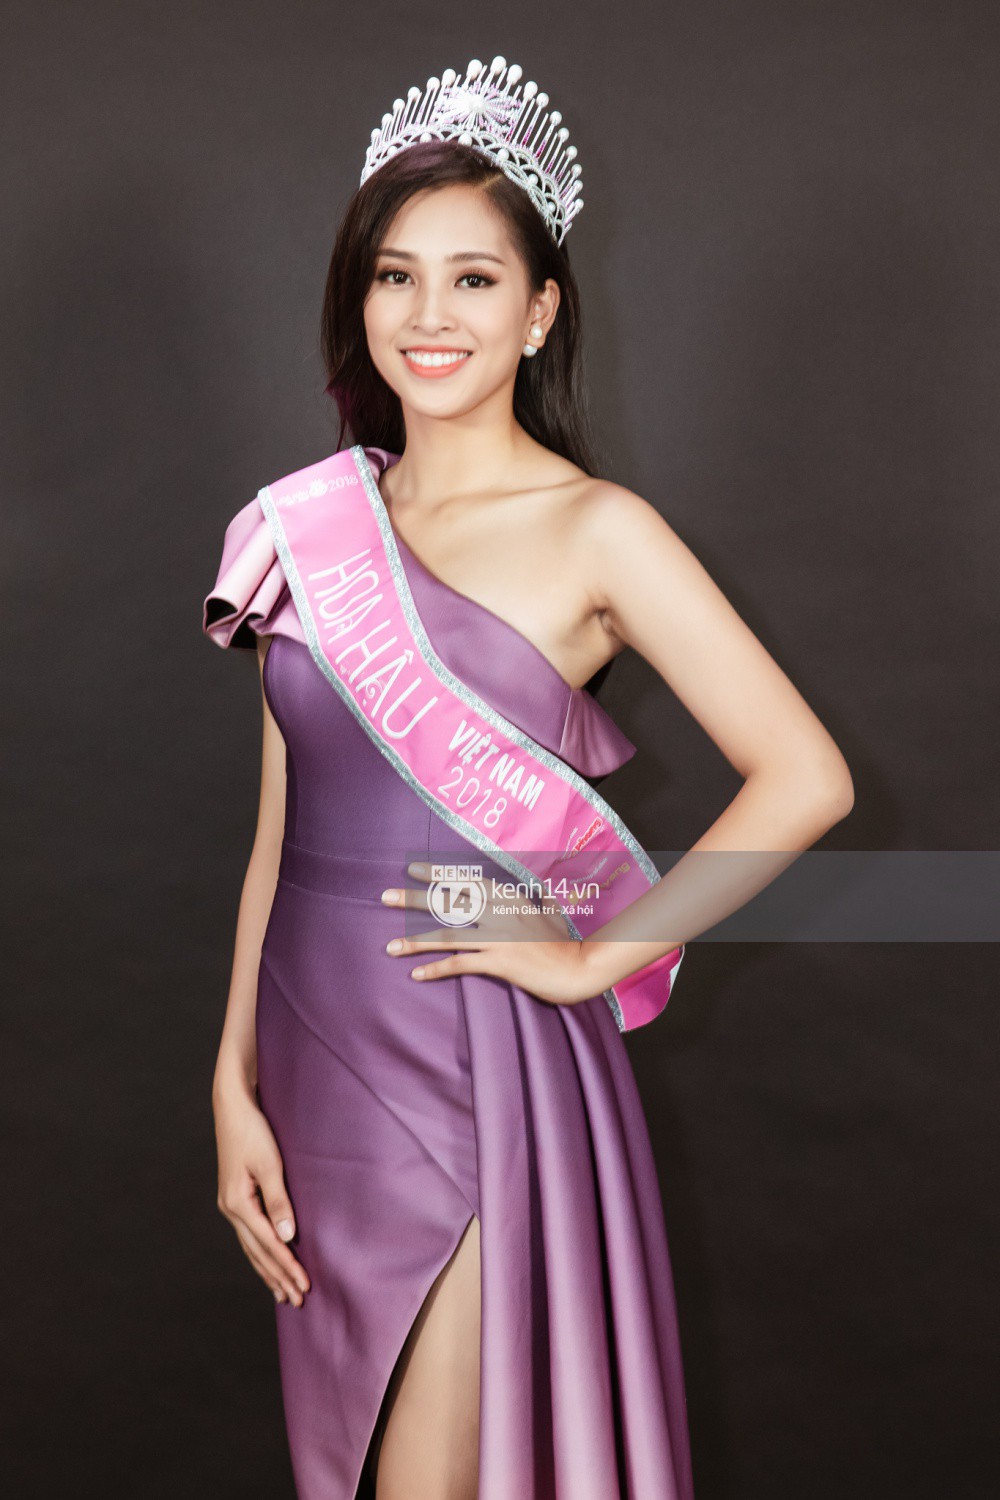 Ngắm cận vẻ đẹp của Top 3 Hoa hậu Việt Nam 2018: Mỹ nhân 2000 được khen sắc sảo, 2 nàng Á mười phân vẹn mười - Ảnh 6.